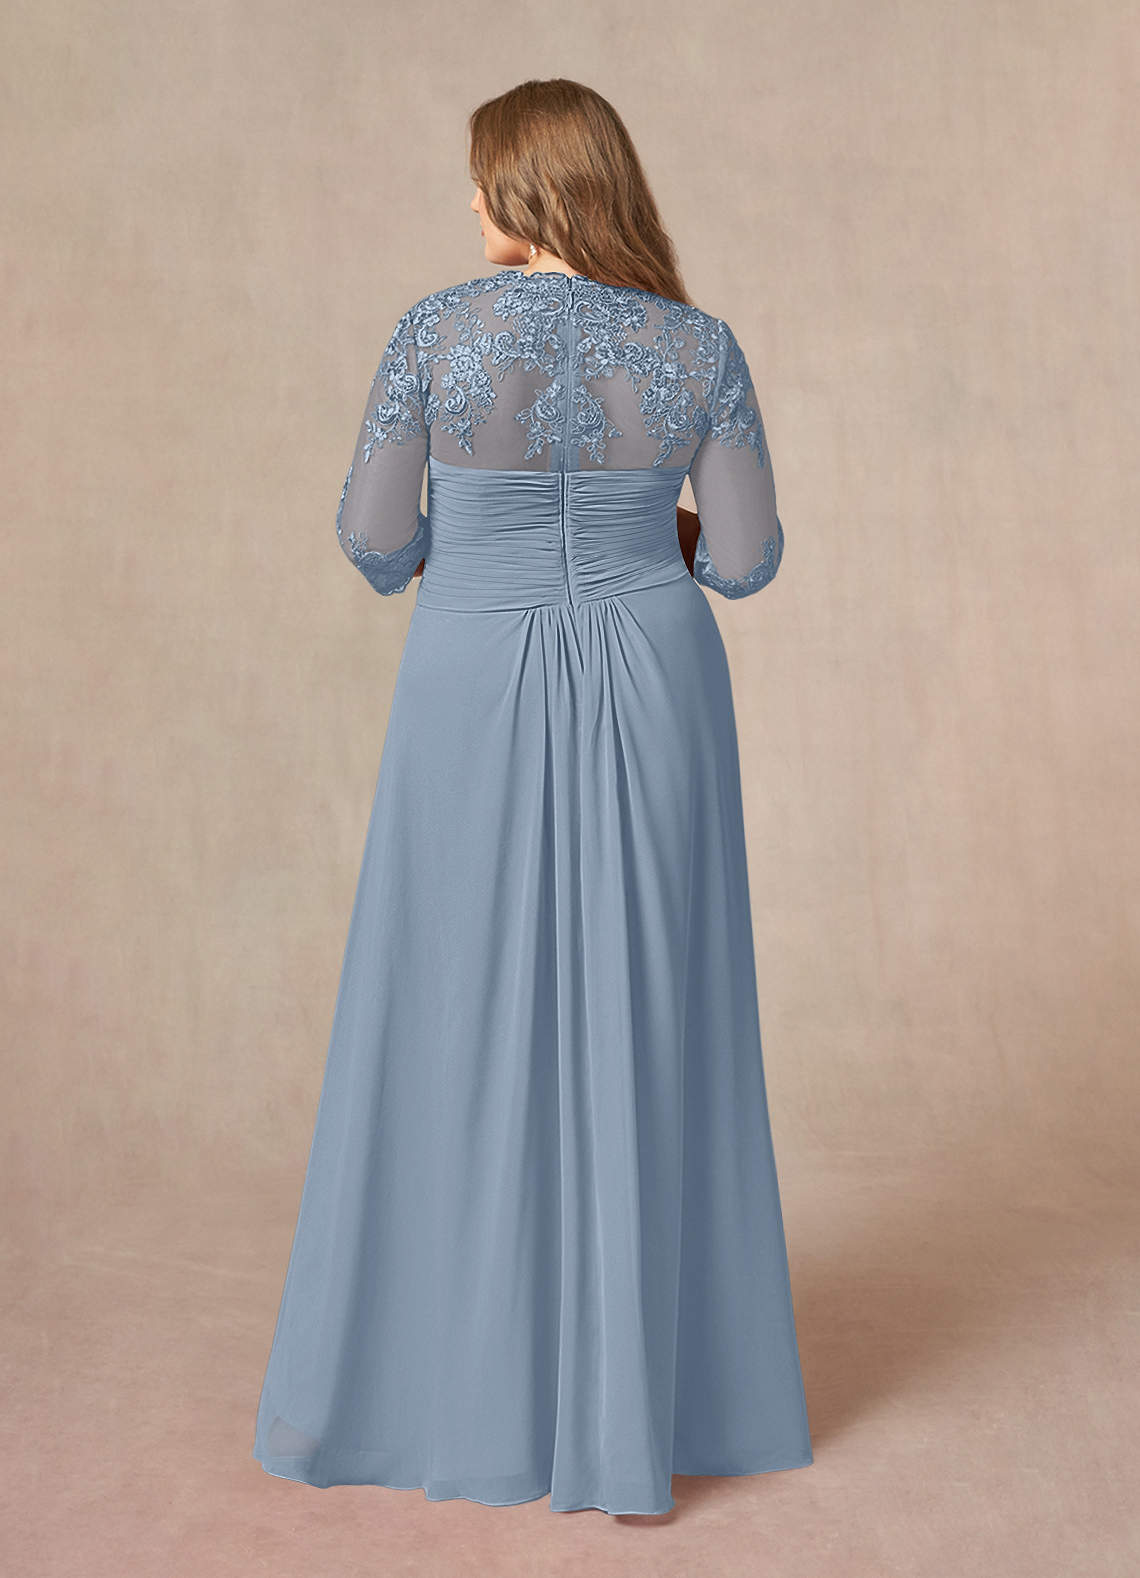 Azazie Devereaux Mother of the Bride Dresses A-Line Lace Chiffon Asymmetrical Dress image1